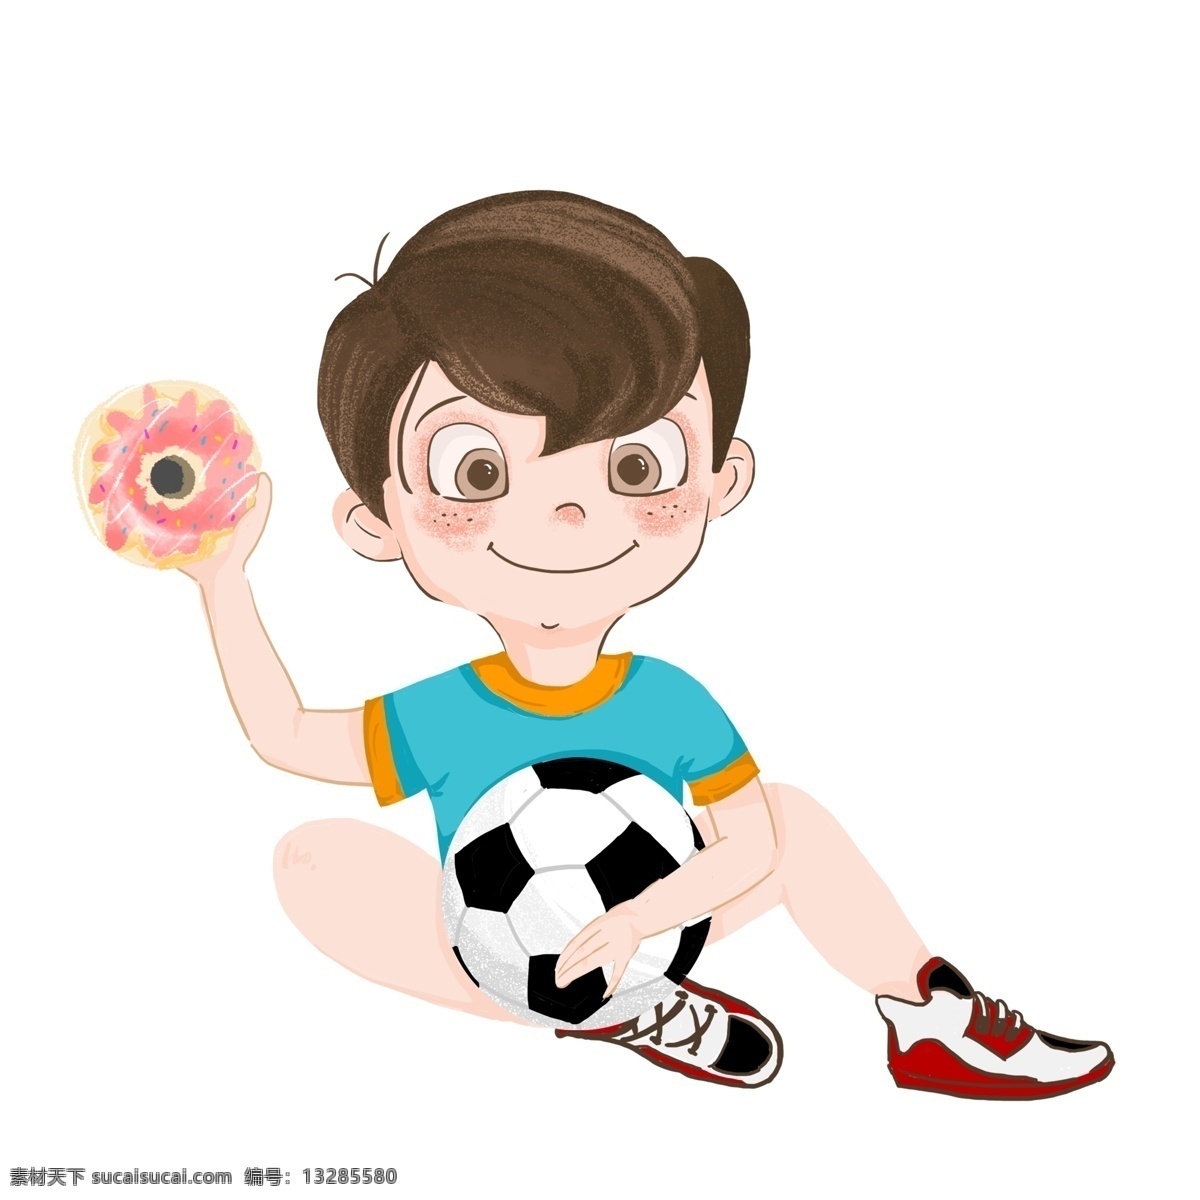 快乐 六 甜甜 圈 足球 小 男孩 六一儿童节 插画 卡通 小男孩 甜甜圈 节日 人物